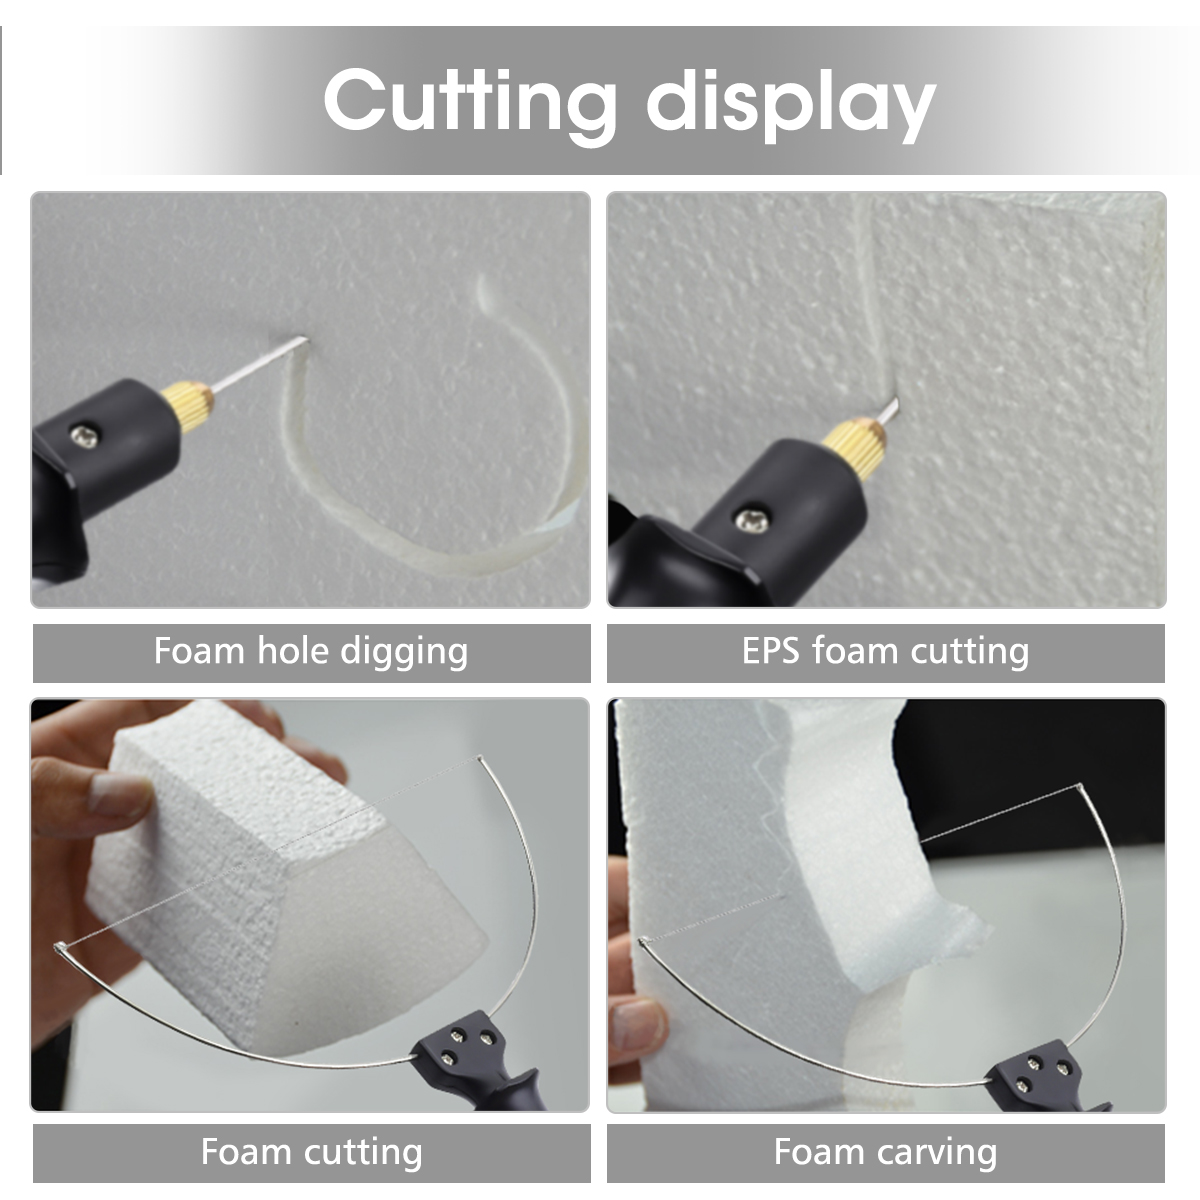 3-in-1-Foam-Cutter-Cutter-with-Indicator-Light-Electric-Cutting-Machine-Pen-Tools-Kit-GOCHANGE-Foam--1382142-6